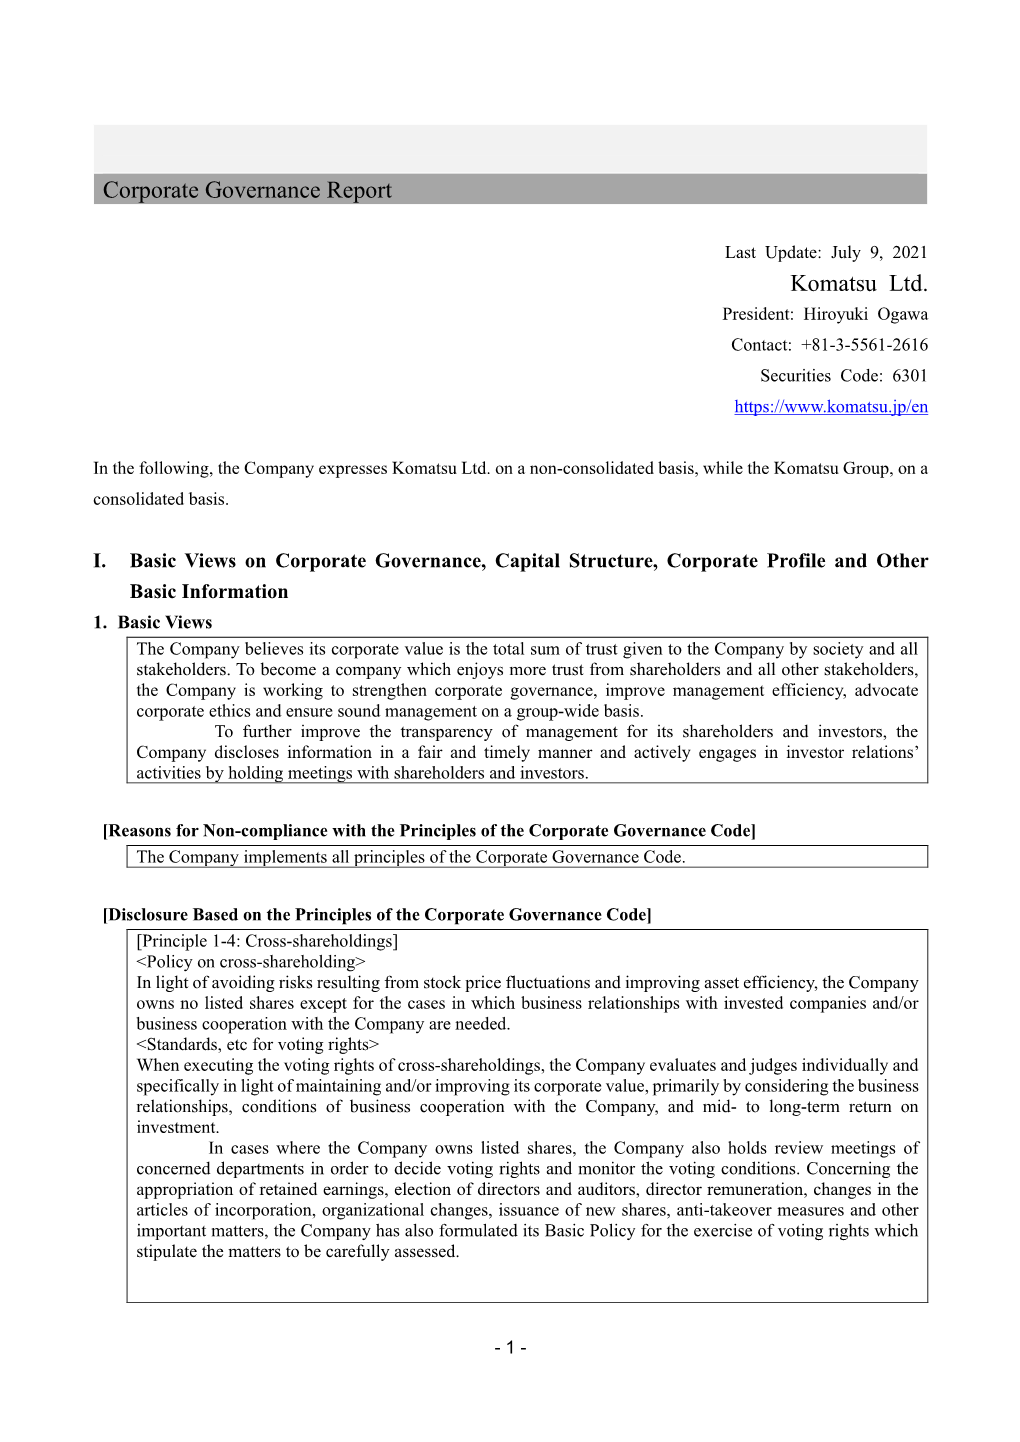 Corporate Governance Report Komatsu Ltd